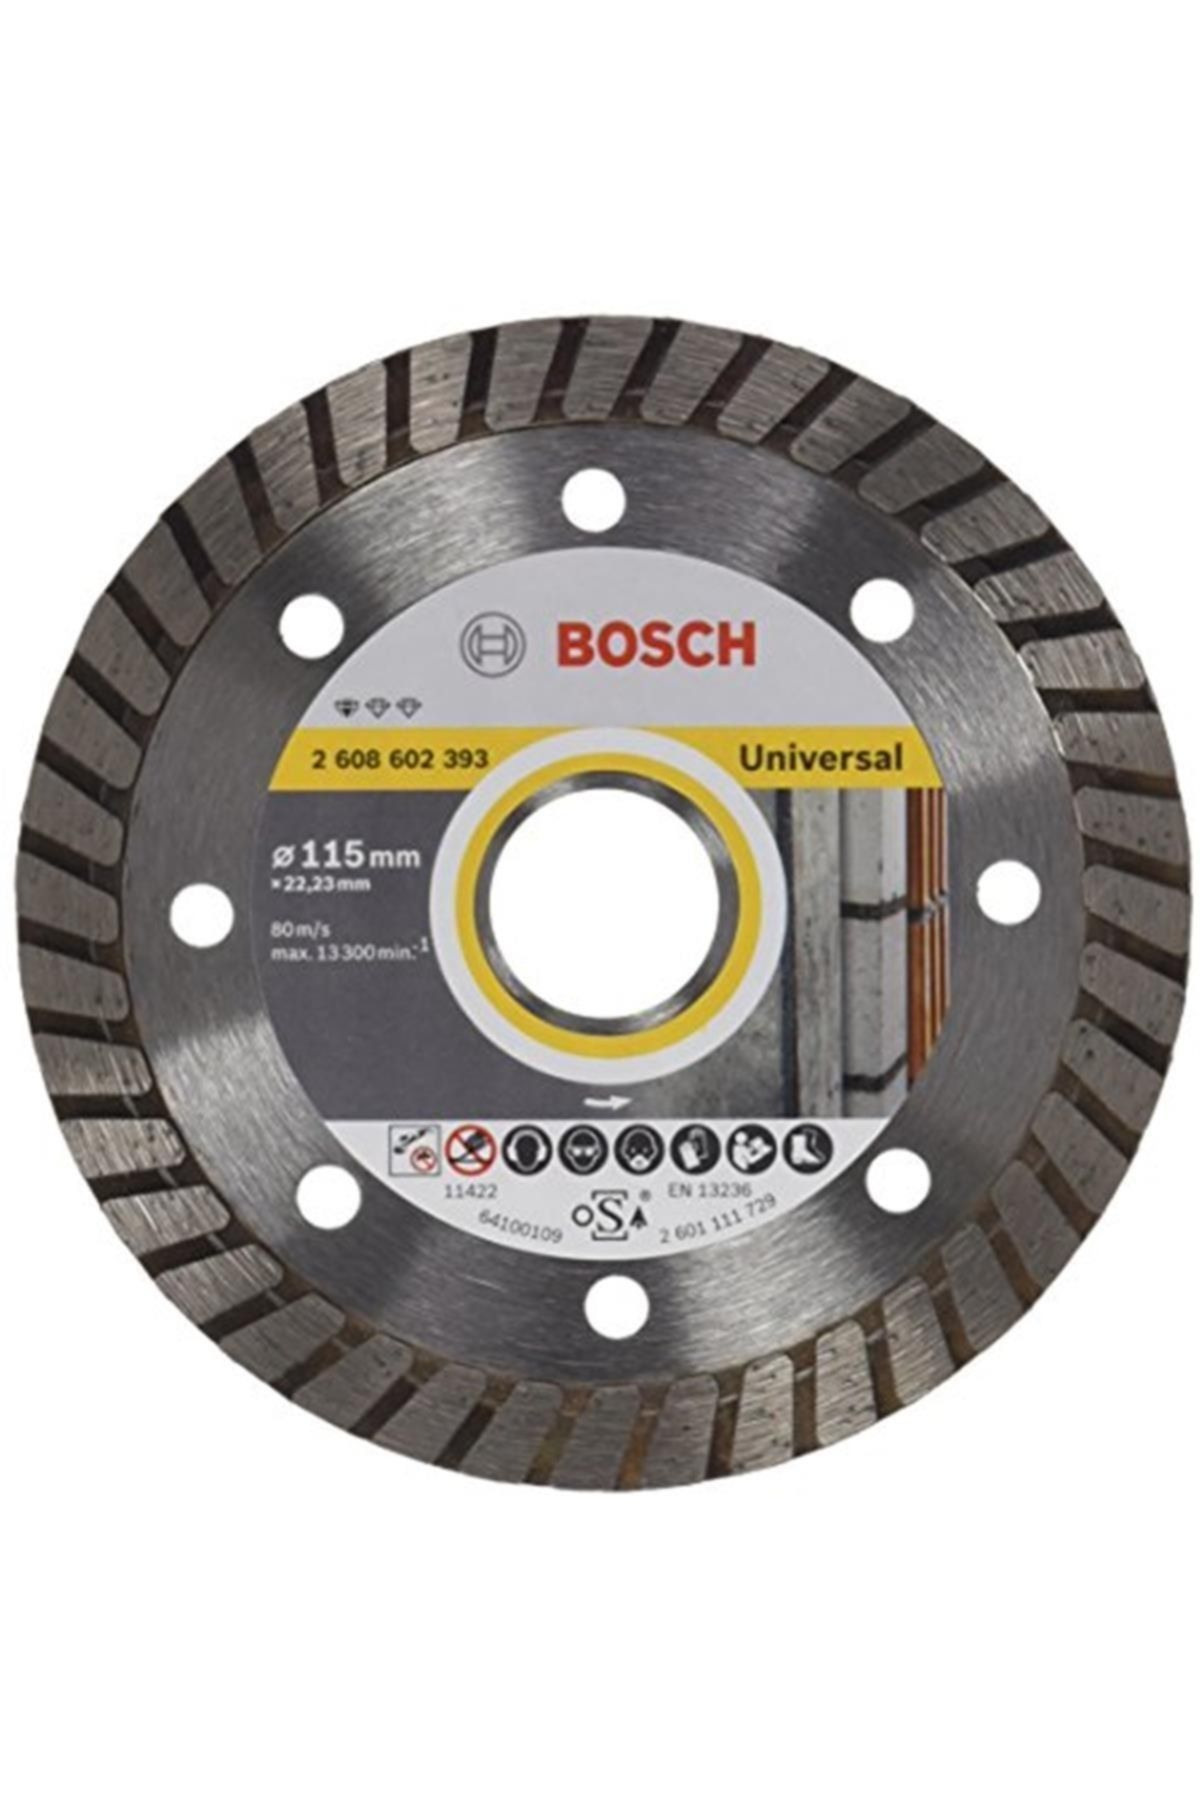 Bosch Standard Seri Genel Yapı Malzemeleri Için Turbo Segmanlı Elmas Kesme Diski 115 mm